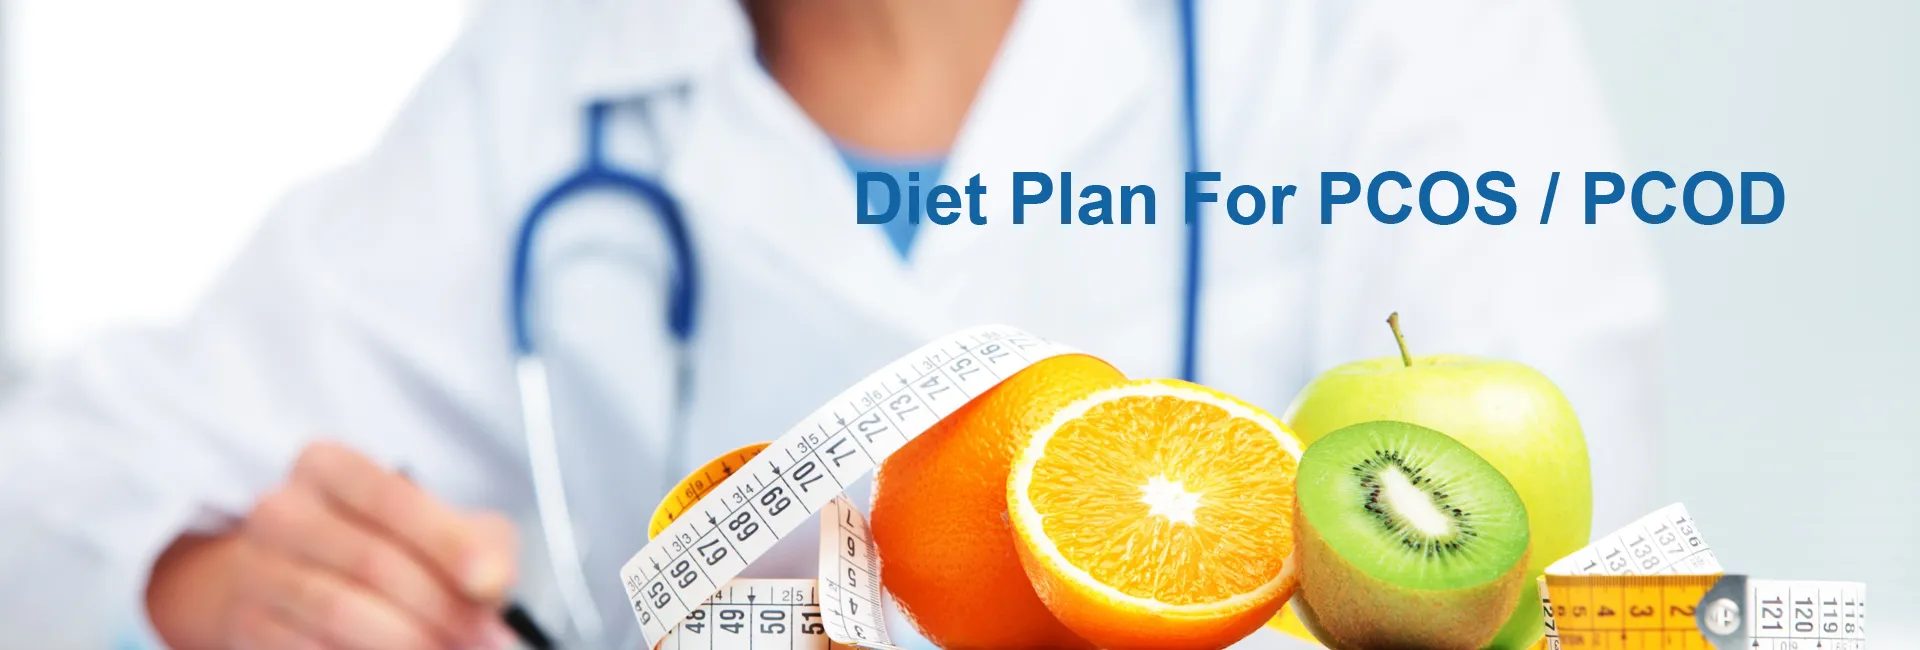 Diet Plan For PCOS / PCOD In Khor Fakkan